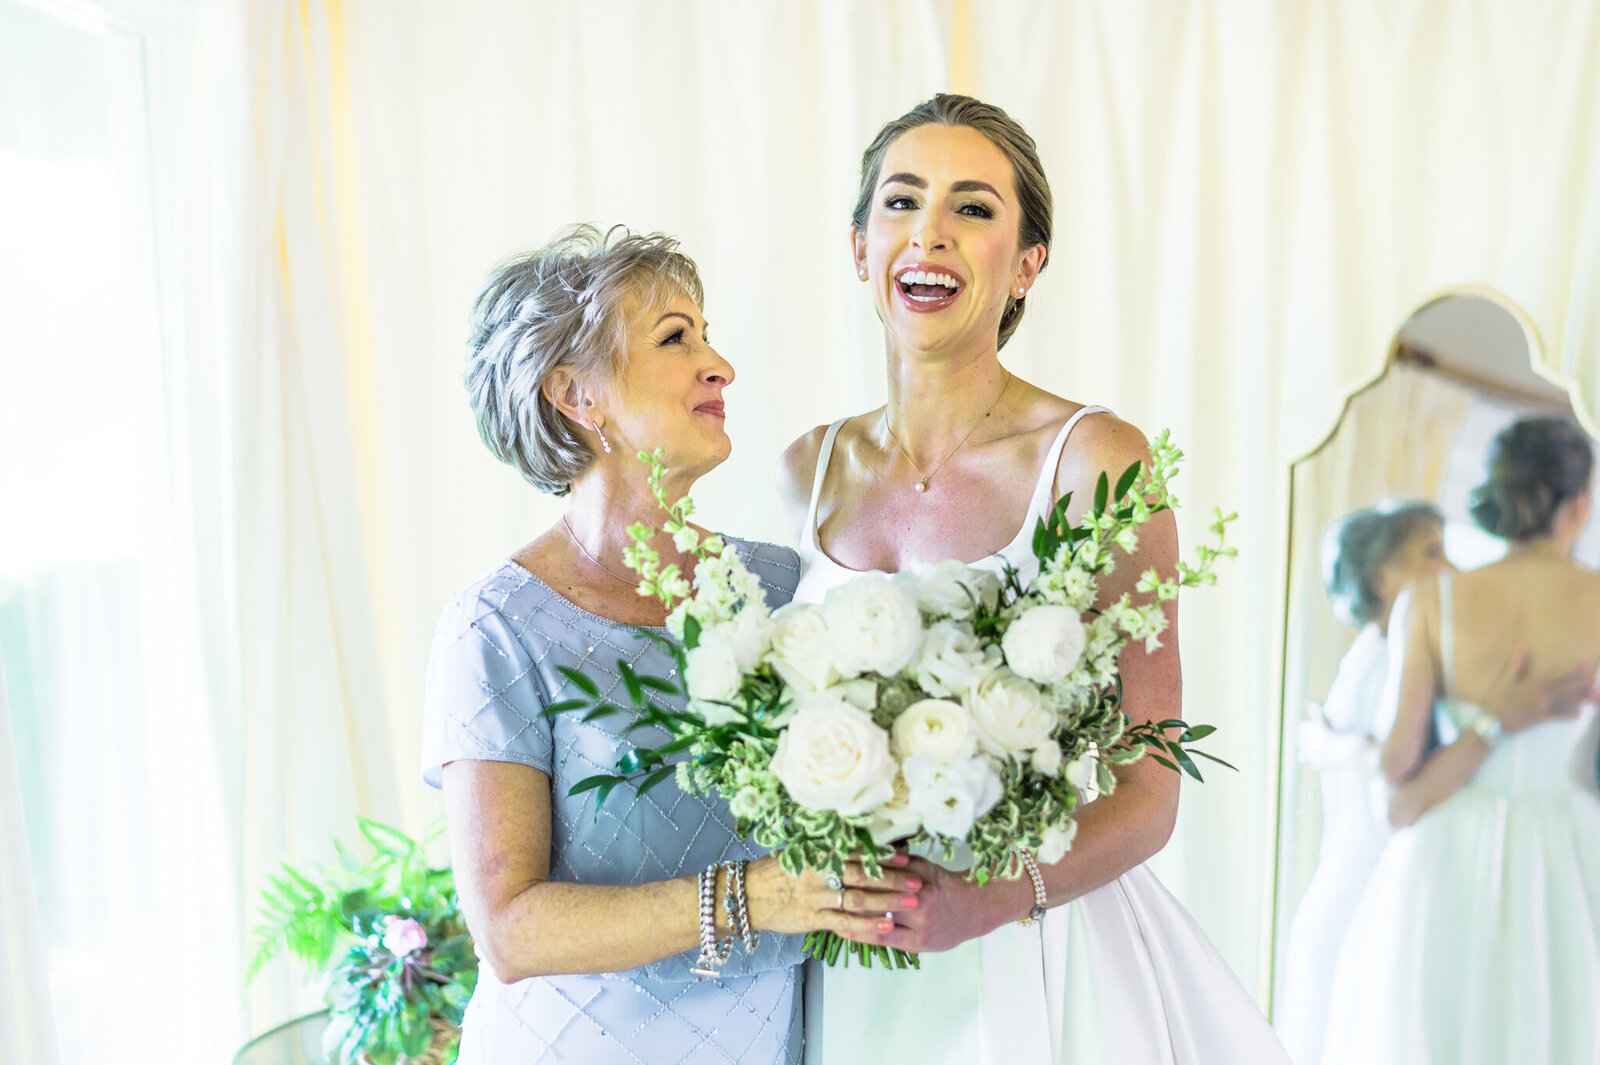 Northern VA bride with mom